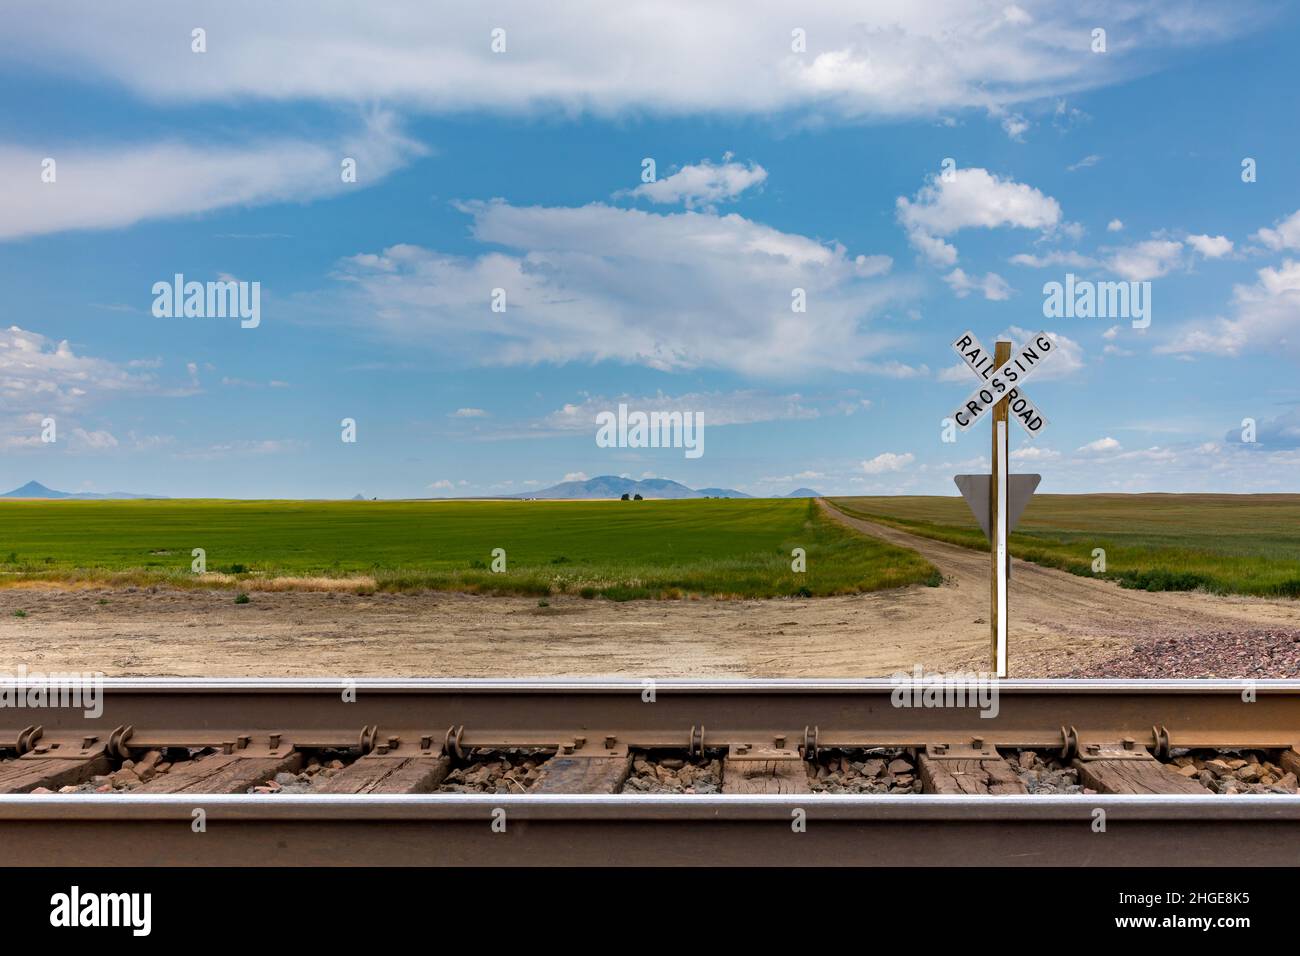 Amplias tierras en Montana detrás de las vías del ferrocarril y una señal de cruce del ferrocarril Foto de stock